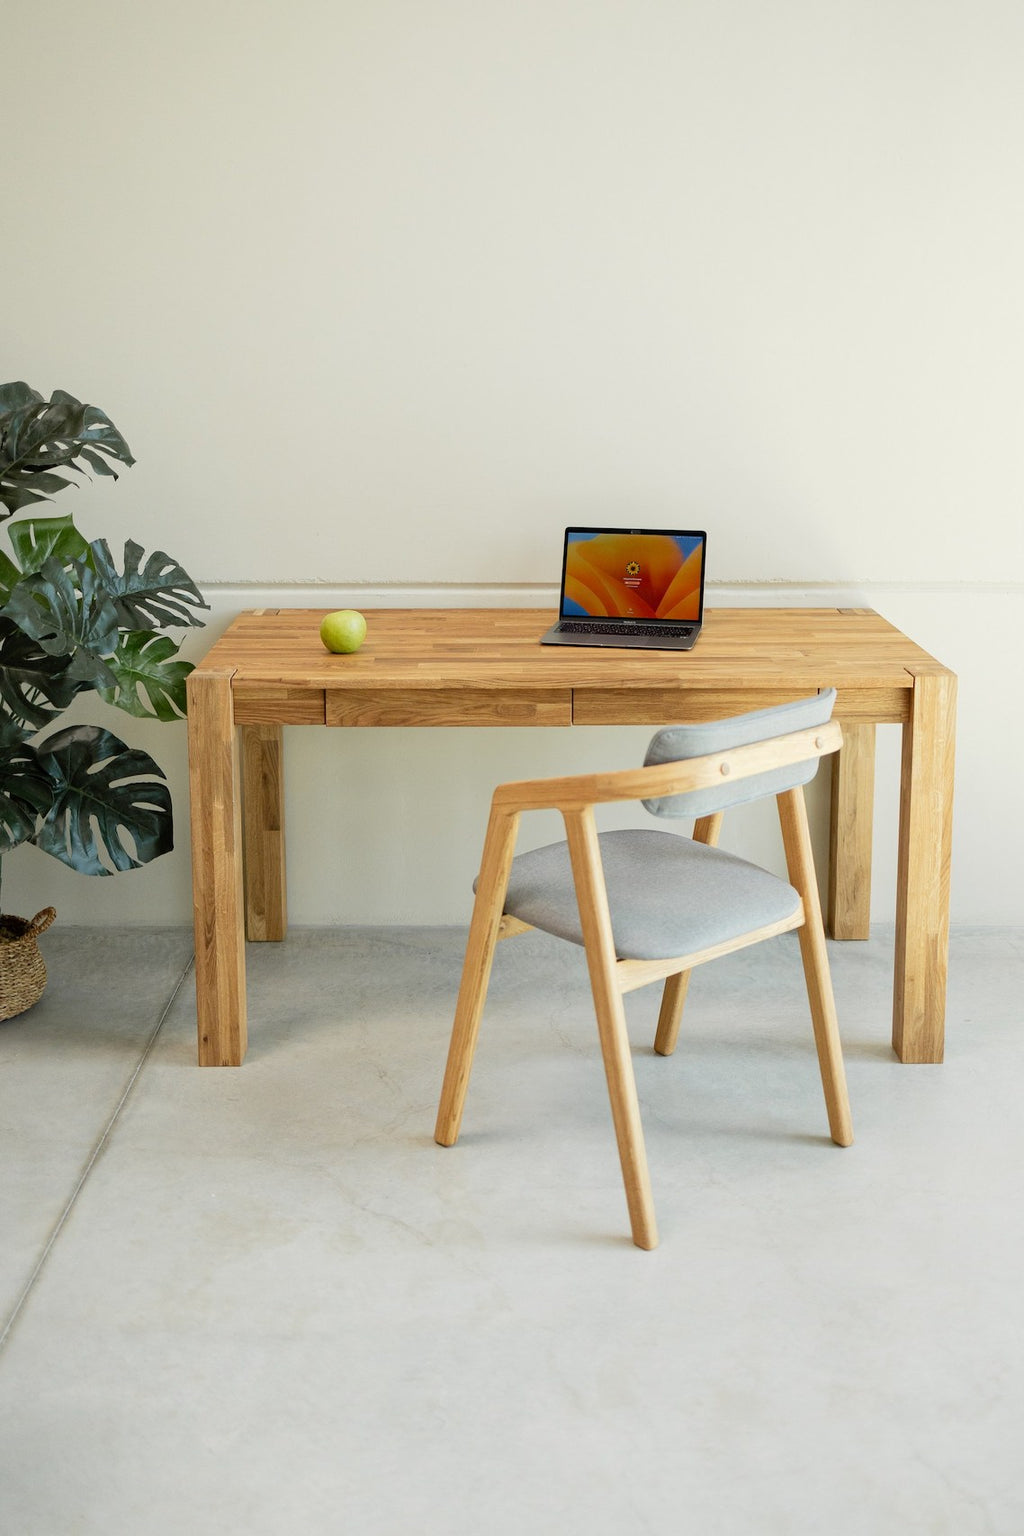 Mesa de madera maciza, escritorio home office. Modelo «5048», de Mobilia.